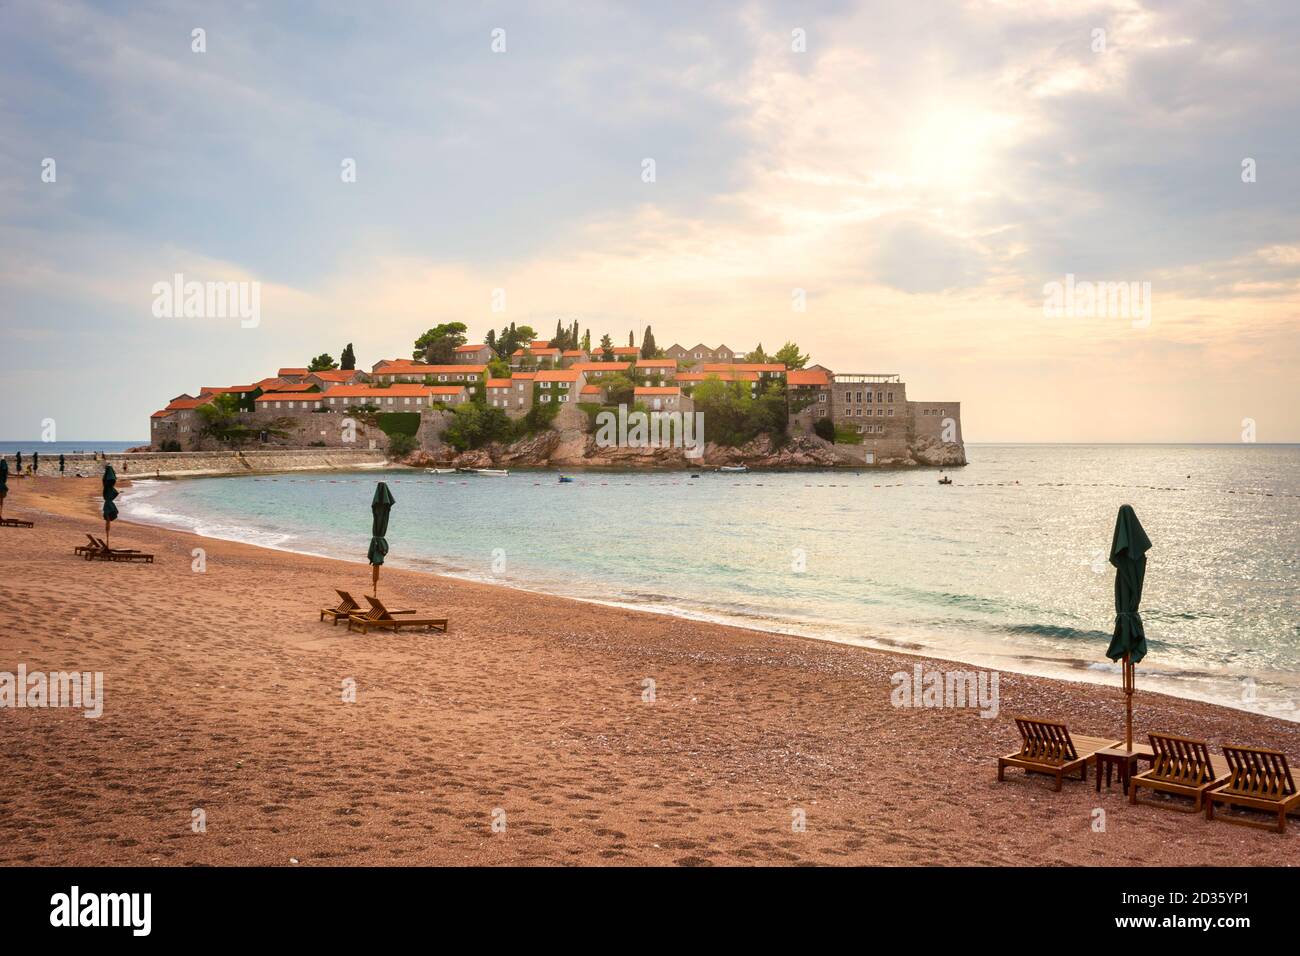 Sveti Stefan, petit îlot et station balnéaire au Monténégro. Balkans, mer Adriatique, Europe. Concept de voyage, arrière-plan. Banque D'Images